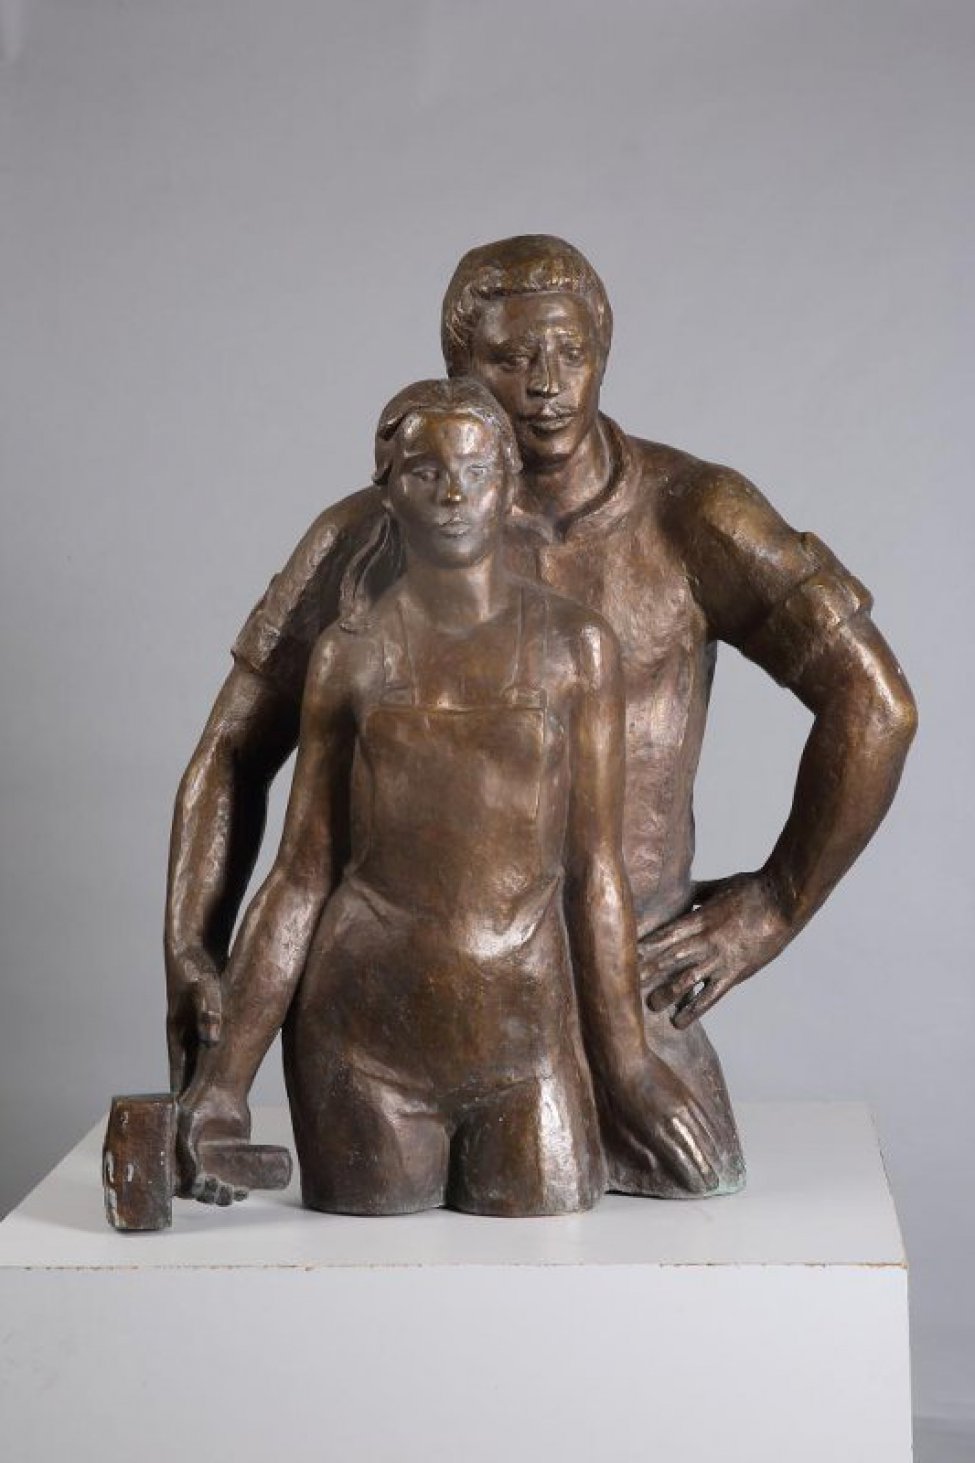 Скульптурная композиция из двух фигур изображенных победренно. На первом плане - молодая женщина в рабочем комбинезоне, в правой руке скульптурный молоток, левая рука лежит на бедре мужчины. Волосы, зачесаны на прямой пробор и убраны за уши, лежат на правом плече. На втором плане - молодой мужчина, стоящий за спиной женщины, его правая рука поддерживает руку женщины с молотком. Левая рука мужчины упирается в бедро. Щекой мужчина прижимается к волосам женщины.